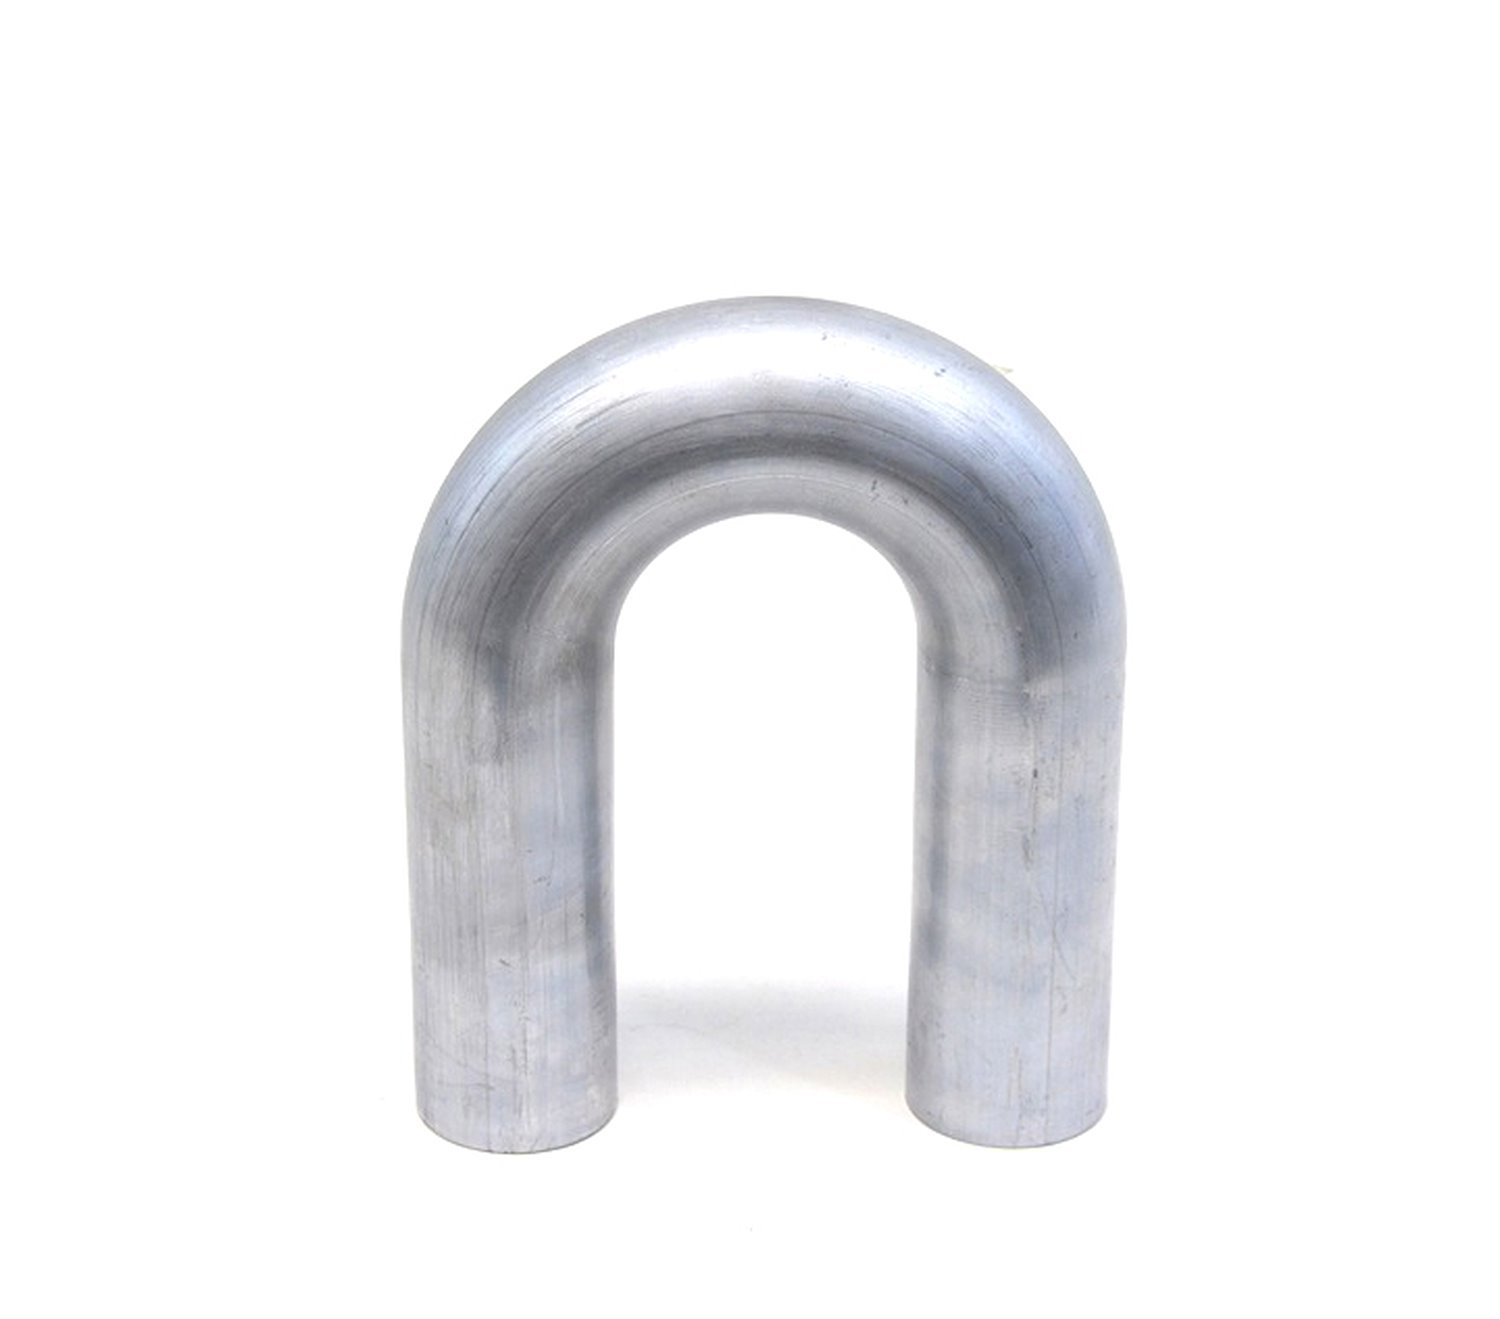 AT180-250-CLR-325 Aluminum Elbow Tube, 6061 Aluminum, 180-Degree U Bend Elbow Tubing, 2-1/2 in. OD, Tight Radius, 3-1/4 in. CLR